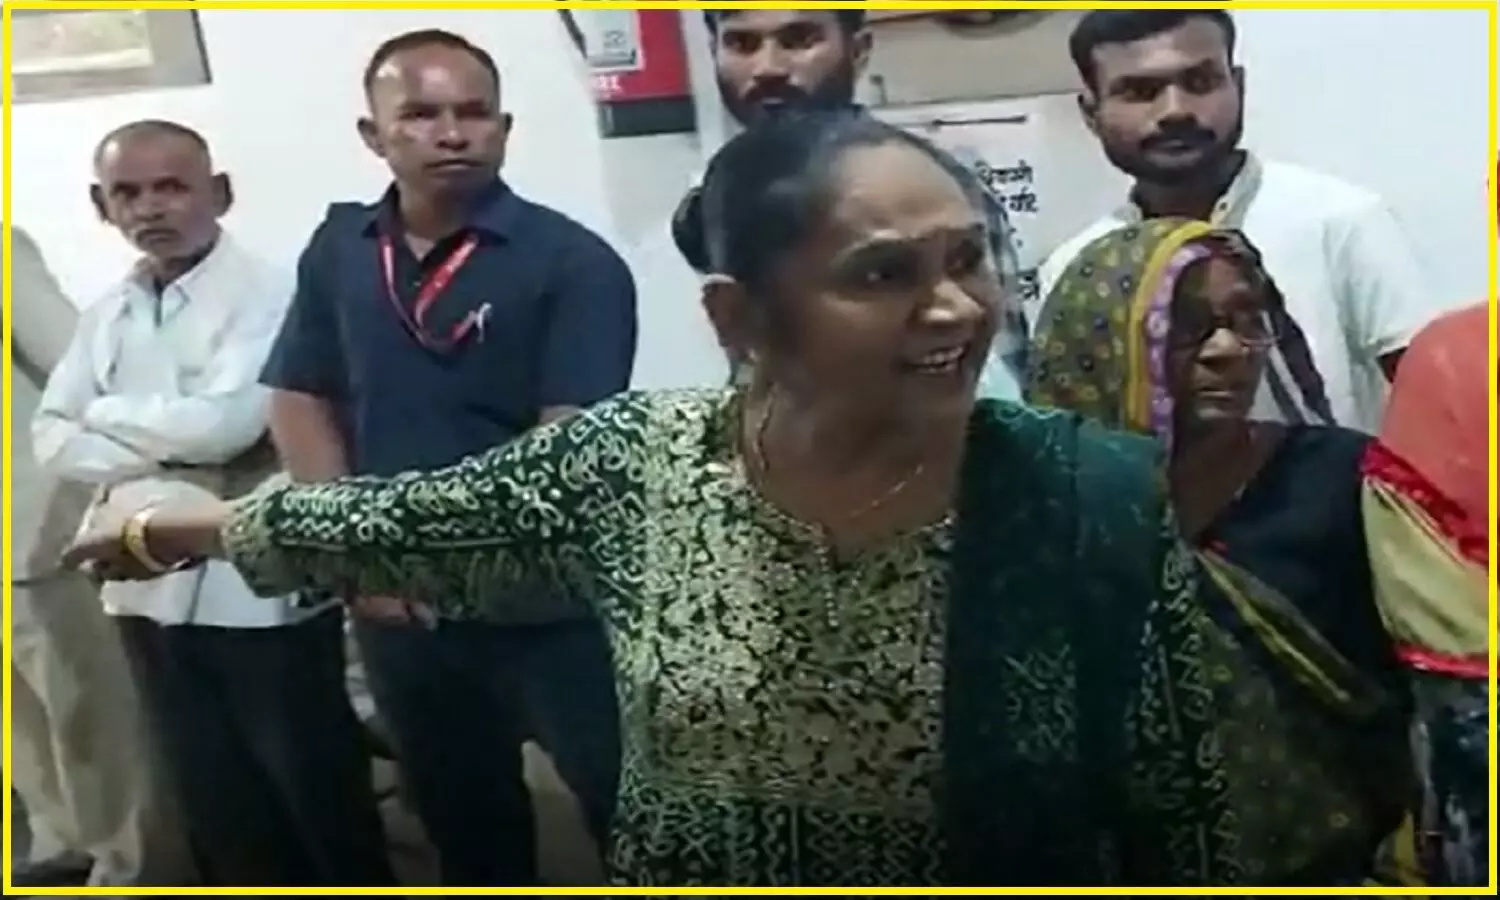 Damoh Vidhayak Video : एमपी की पथरिया विधायक रामबाई के खिलाफ एफआईआर, दमोह कलेक्टर को कहा बेवकूफ